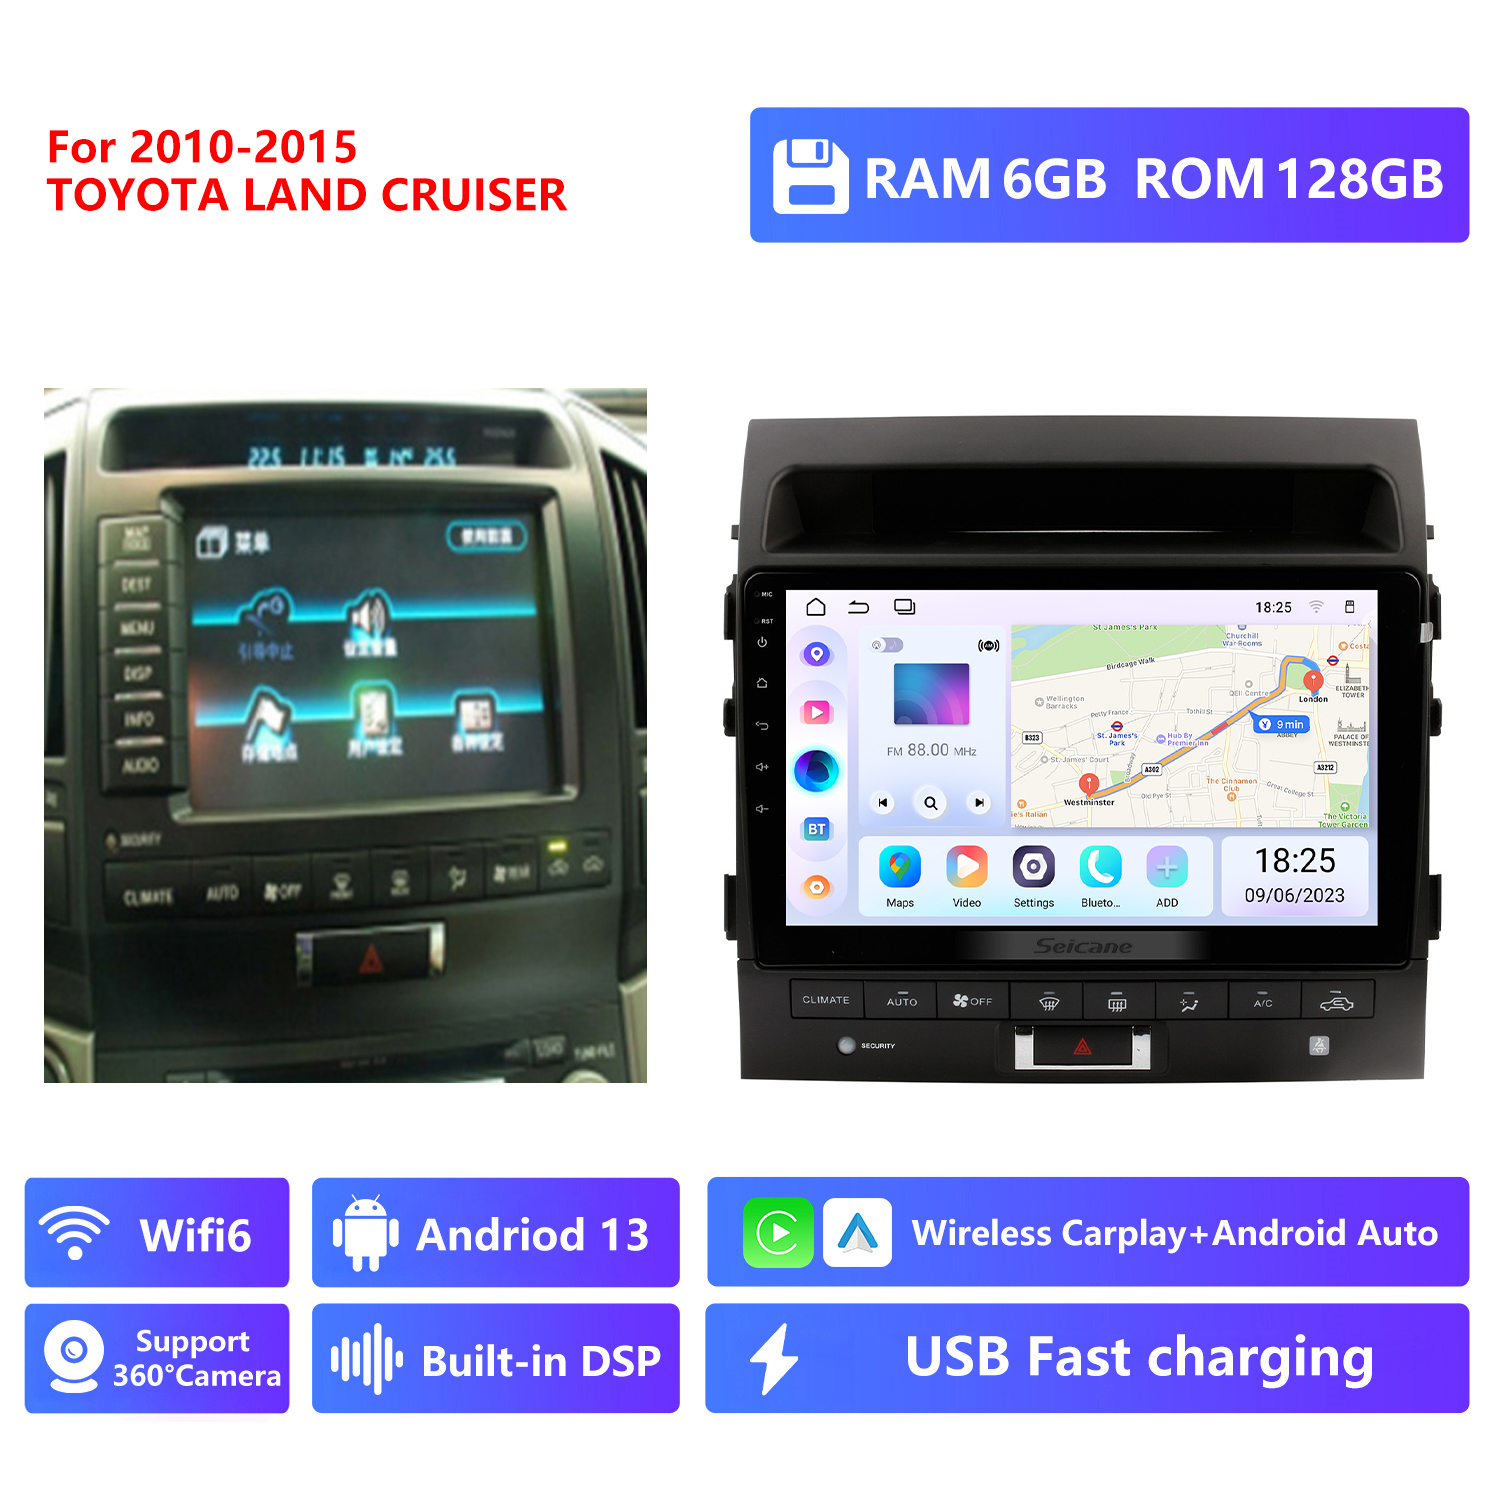 RAM 6G,ROM 128G,2010-2015 year